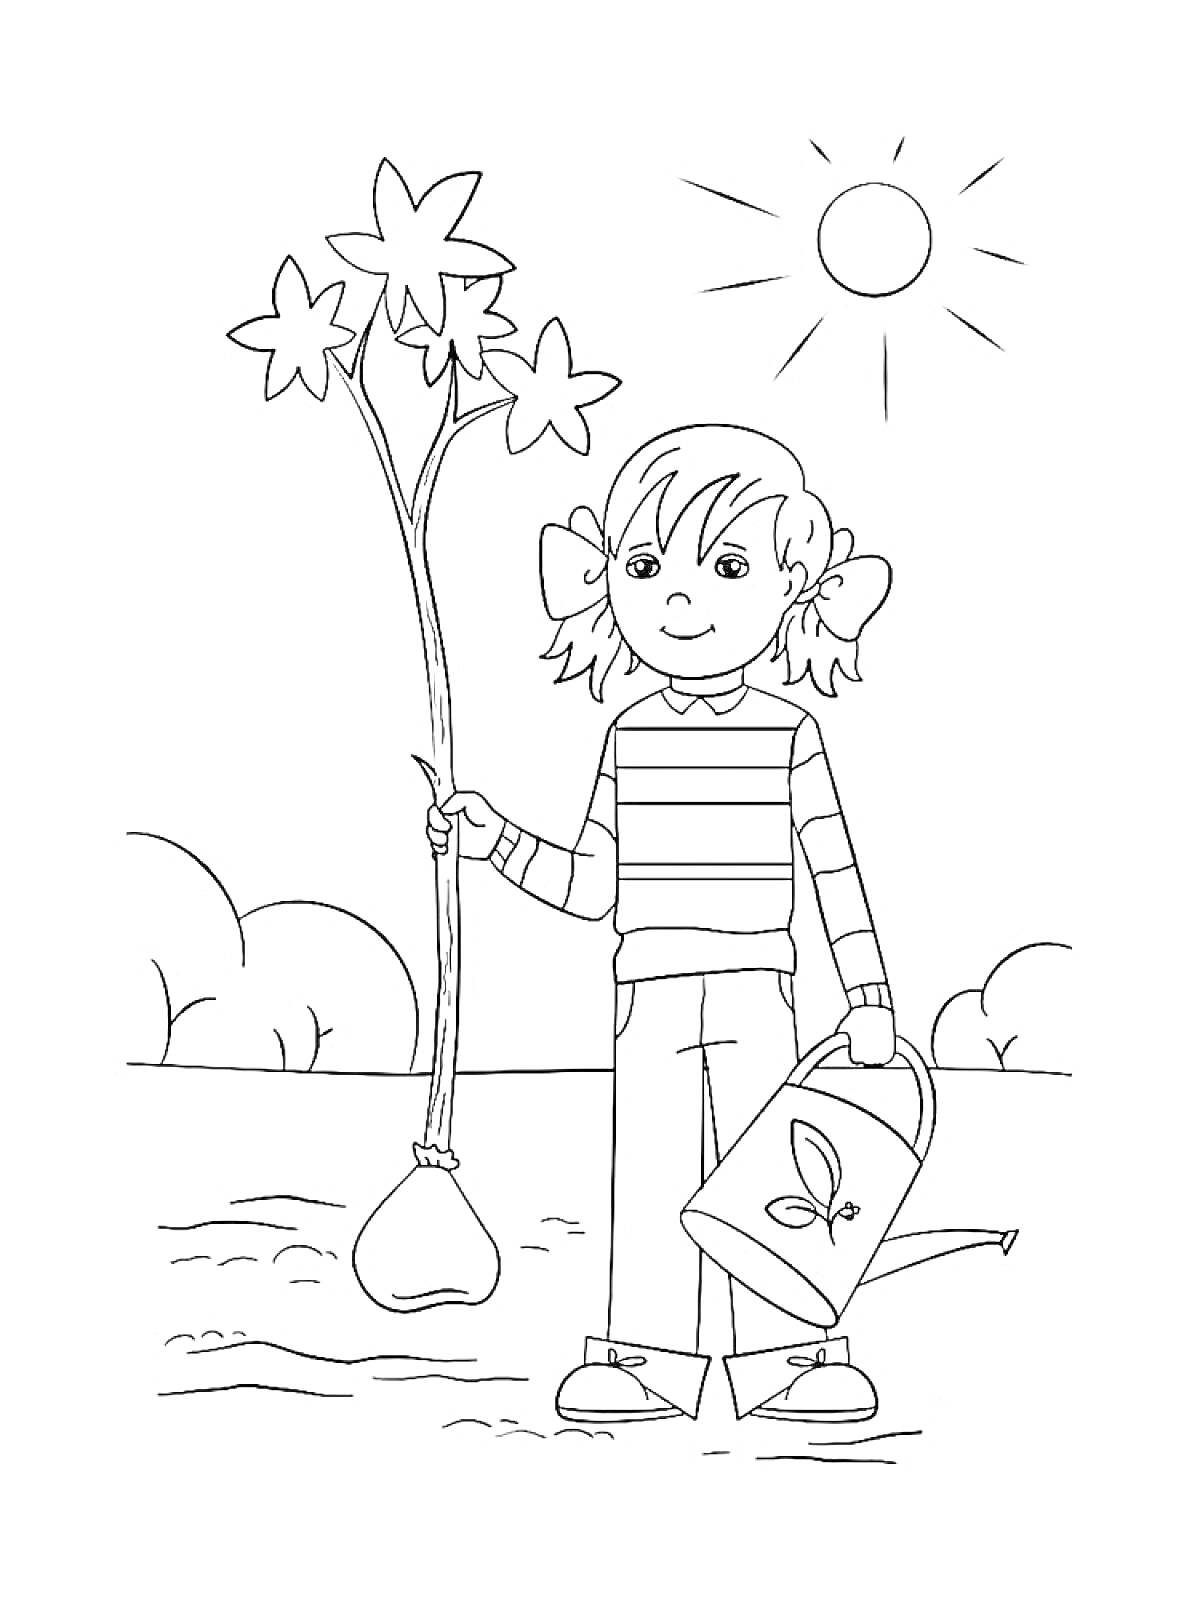 Раскраска Девочка с растением, вязанка из звездных цветов, лейка с листочками, кусты, расписывающие красками весь пейзаж, солнечный день